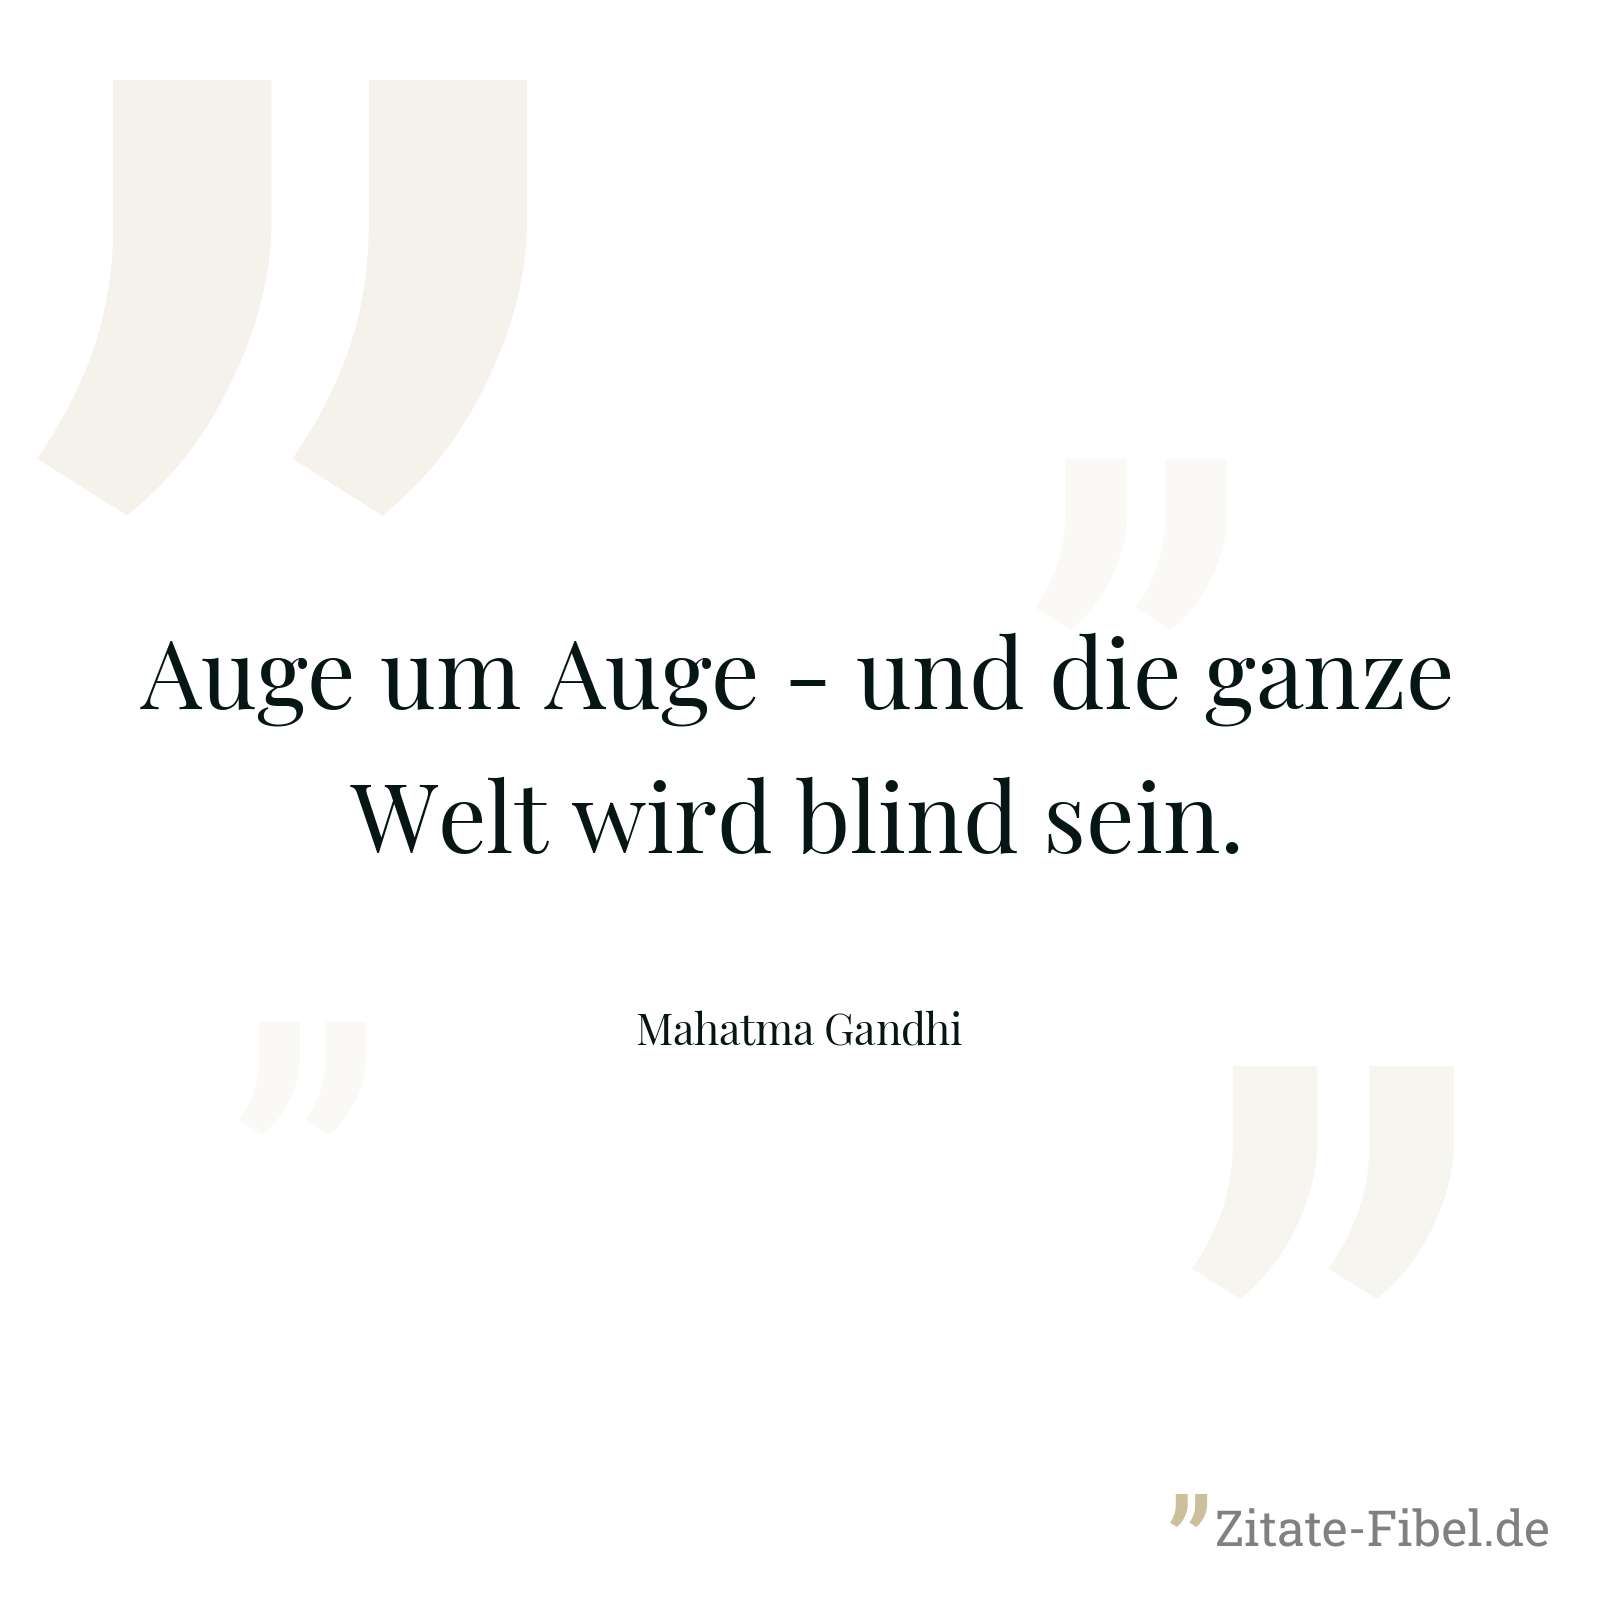 Auge um Auge - und die ganze Welt wird blind sein. - Mahatma Gandhi